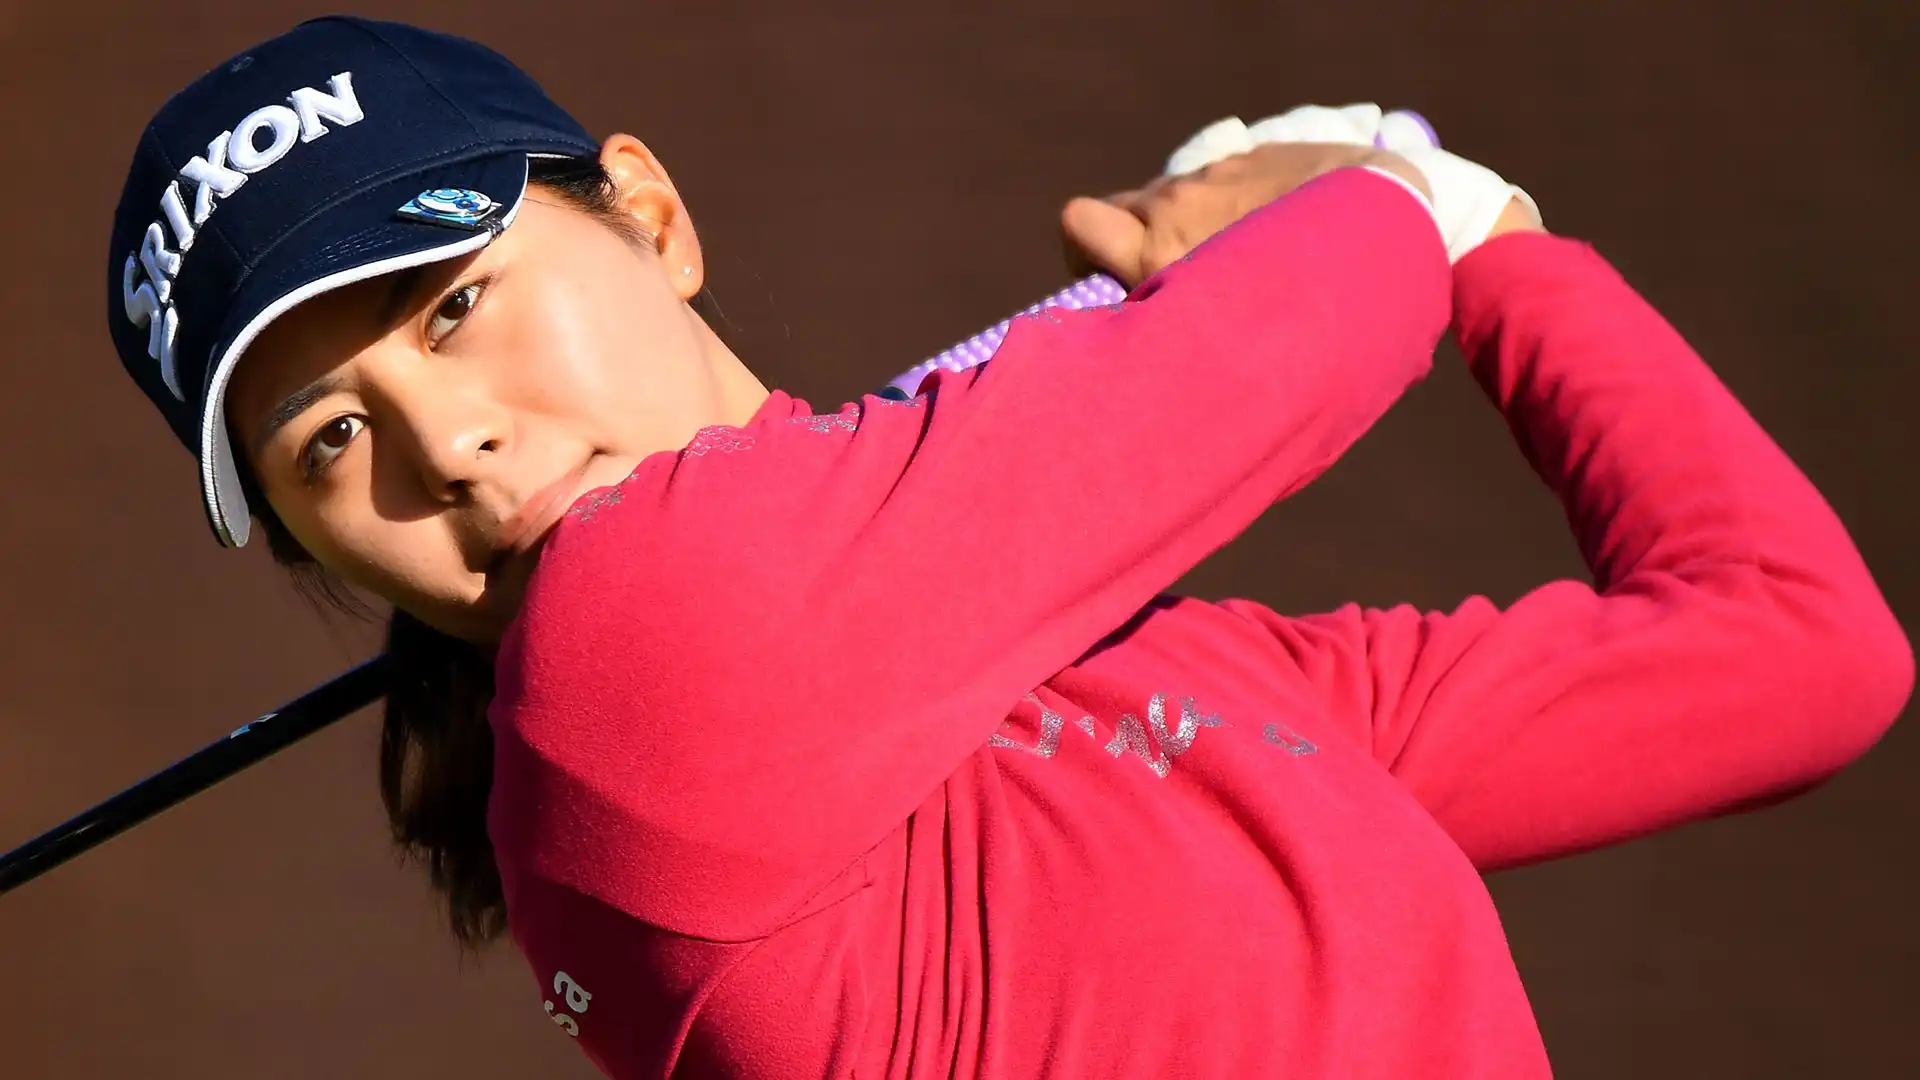 Ha iniziato a giocare a golf all'età di 8 anni grazie alla sua ammirazione per Ai Miyazato e all'influenza di suo padre.